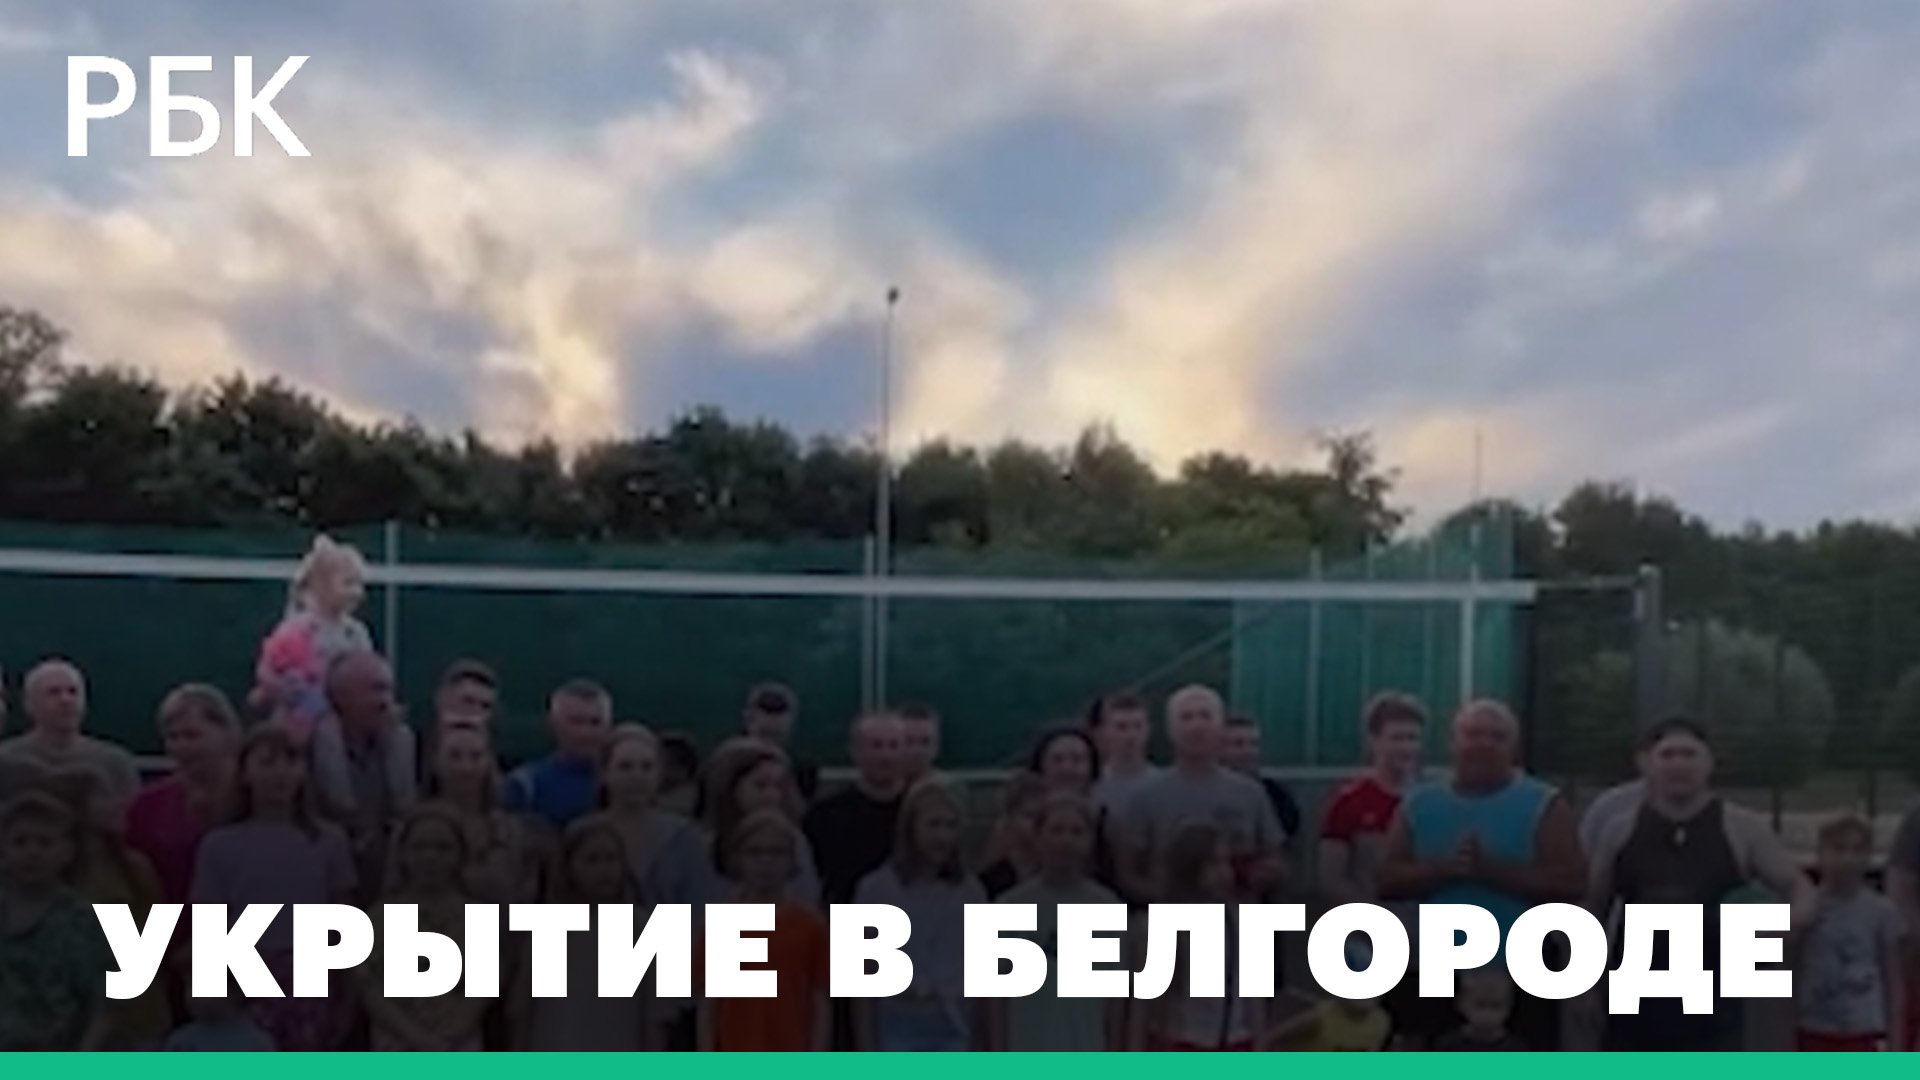 Жители Белгорода попросили установить укрытие рядом с детской площадкой